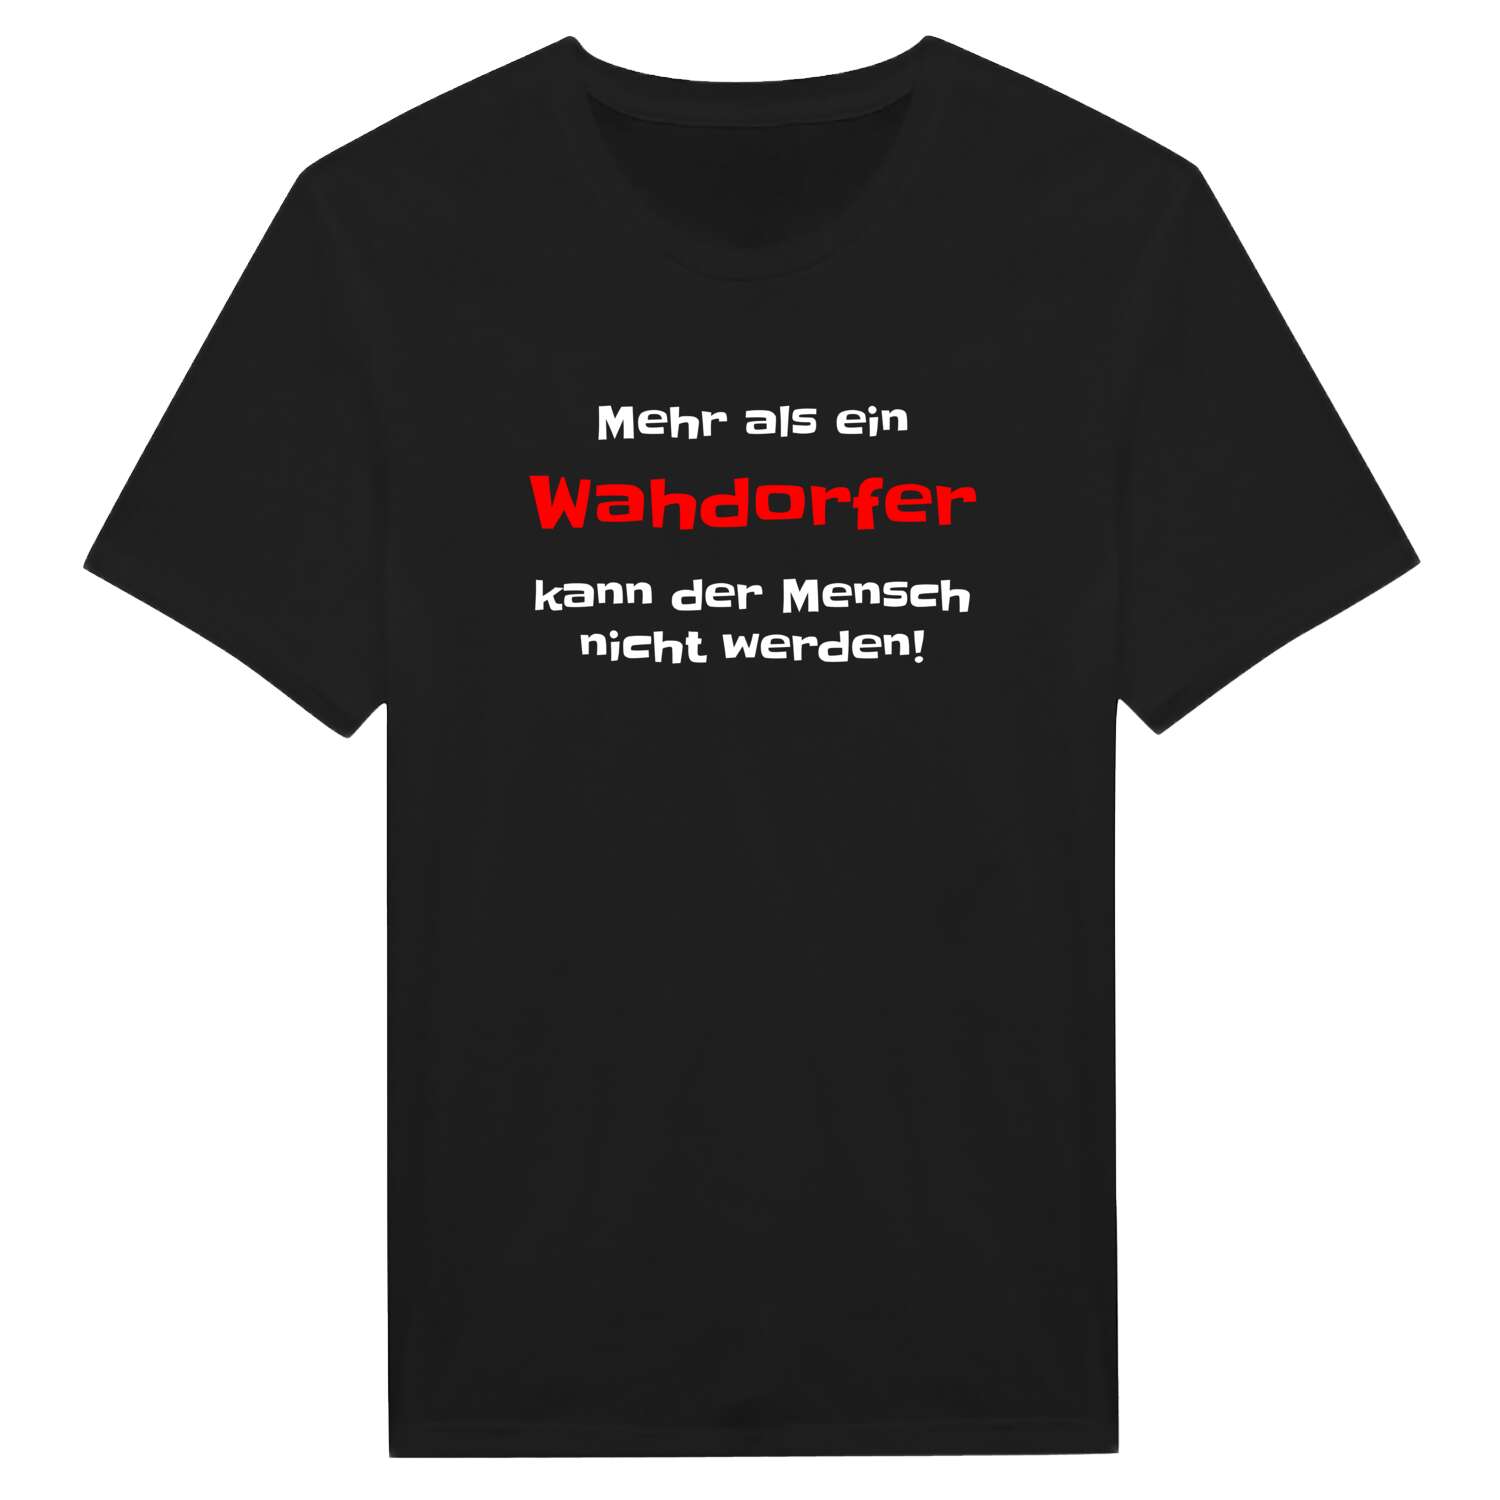 Wahdorf T-Shirt »Mehr als ein«